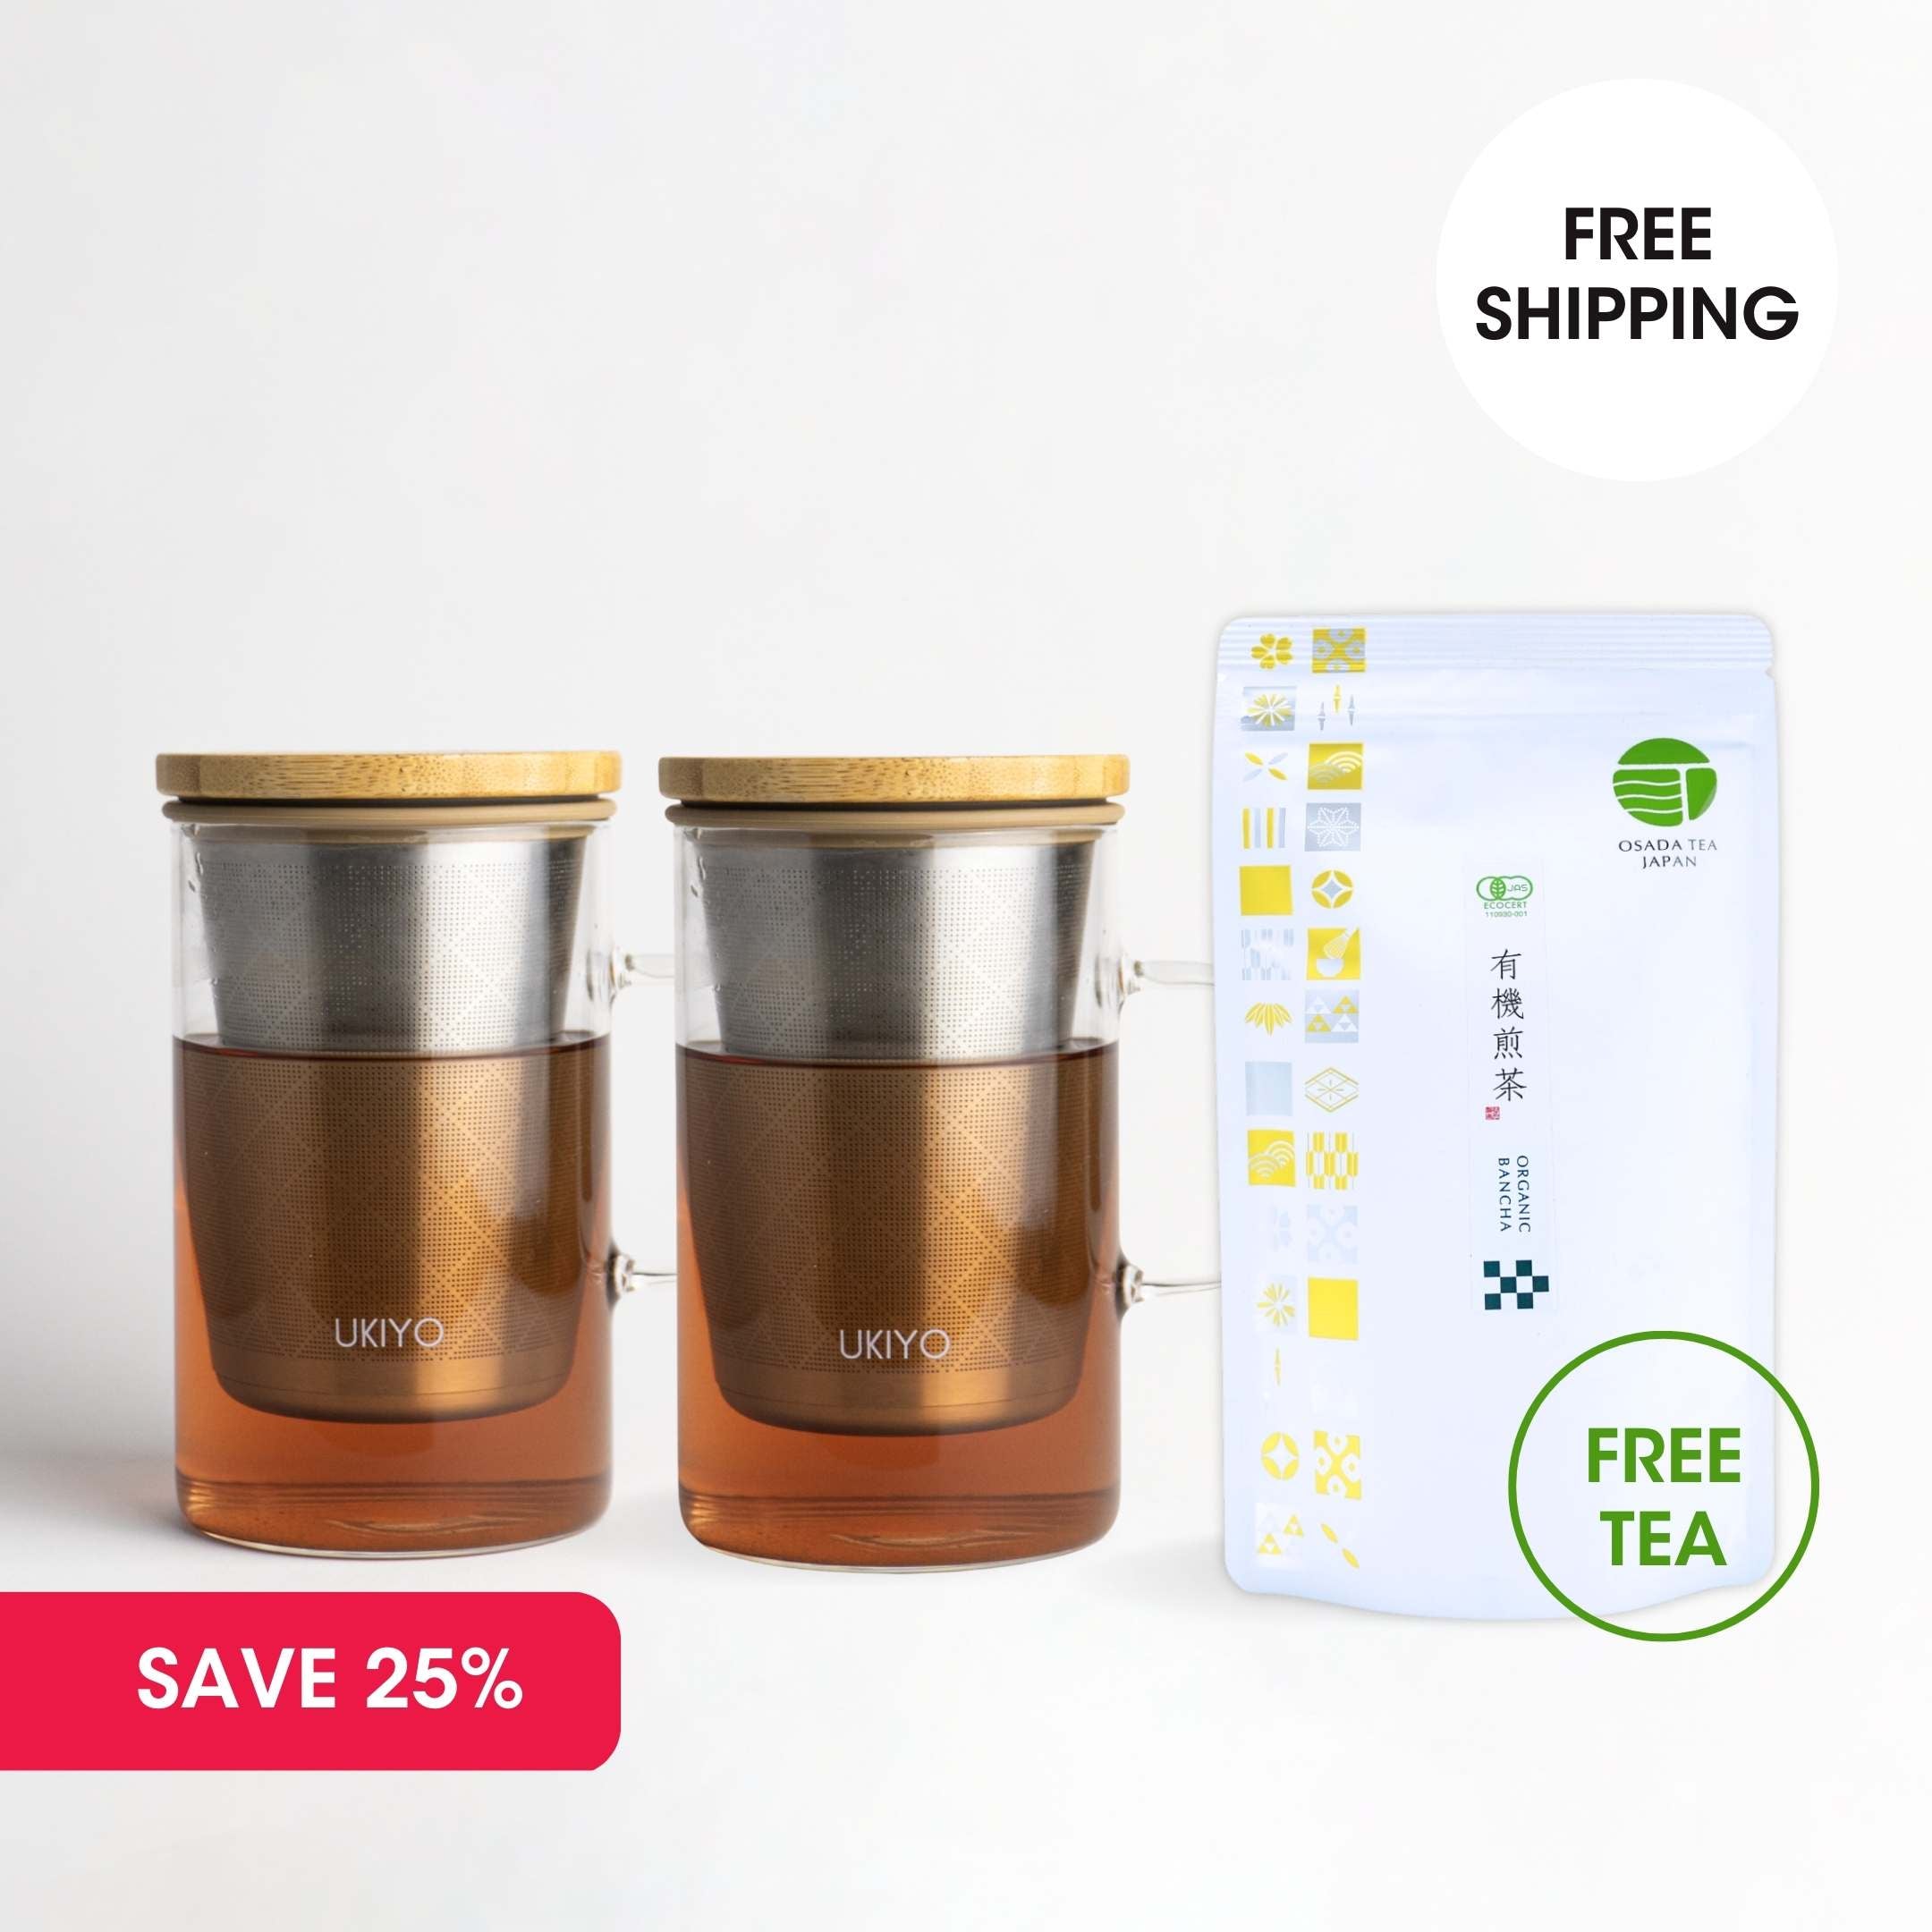 Double Up Twin Pack - 2 Ukiyo Wood & FREE Organic Bancha Tea